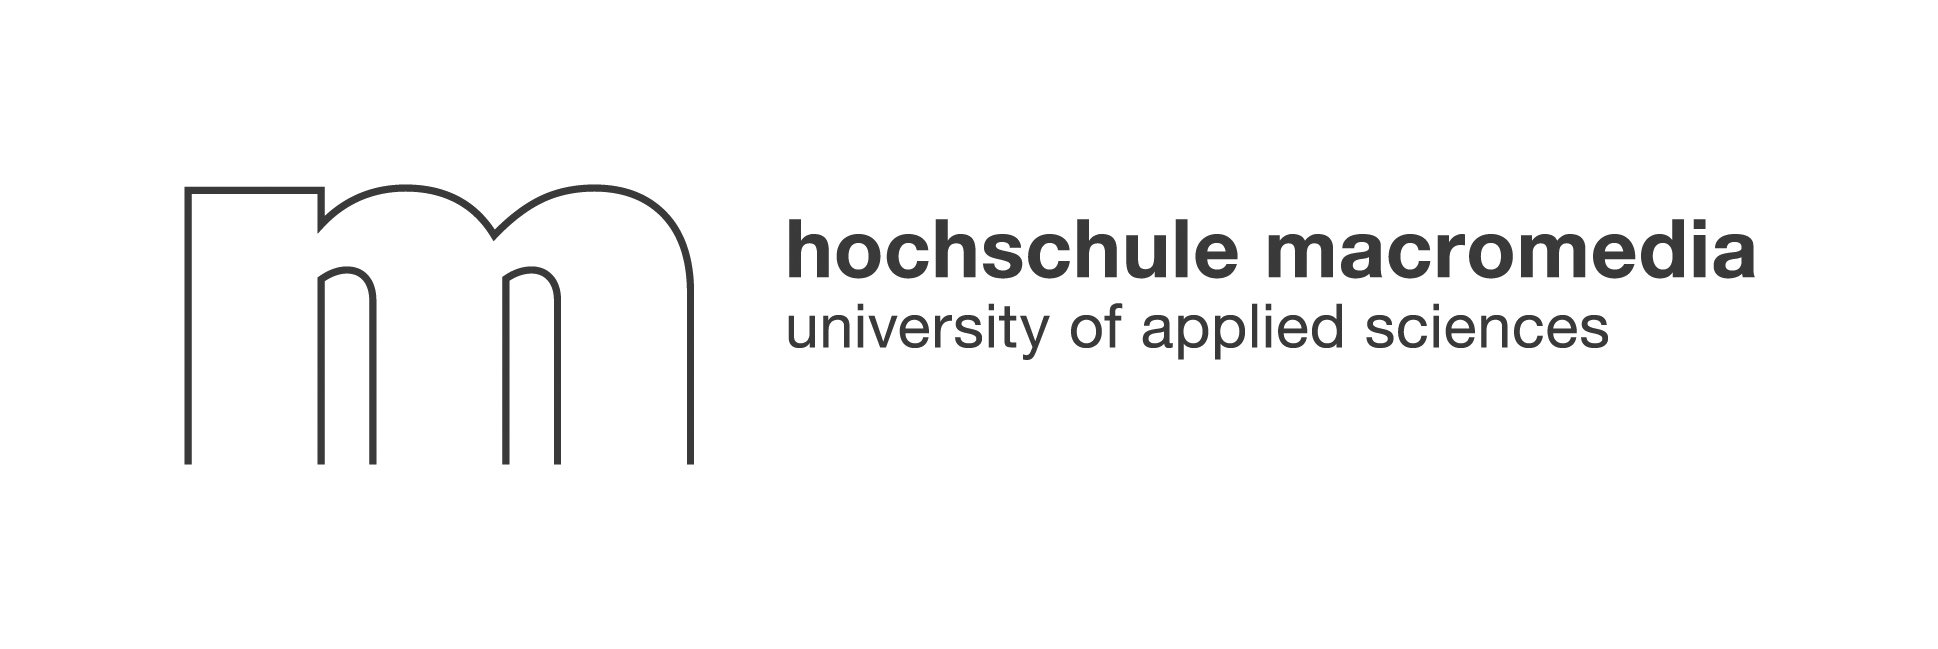 Hochschule macromedia logo sw